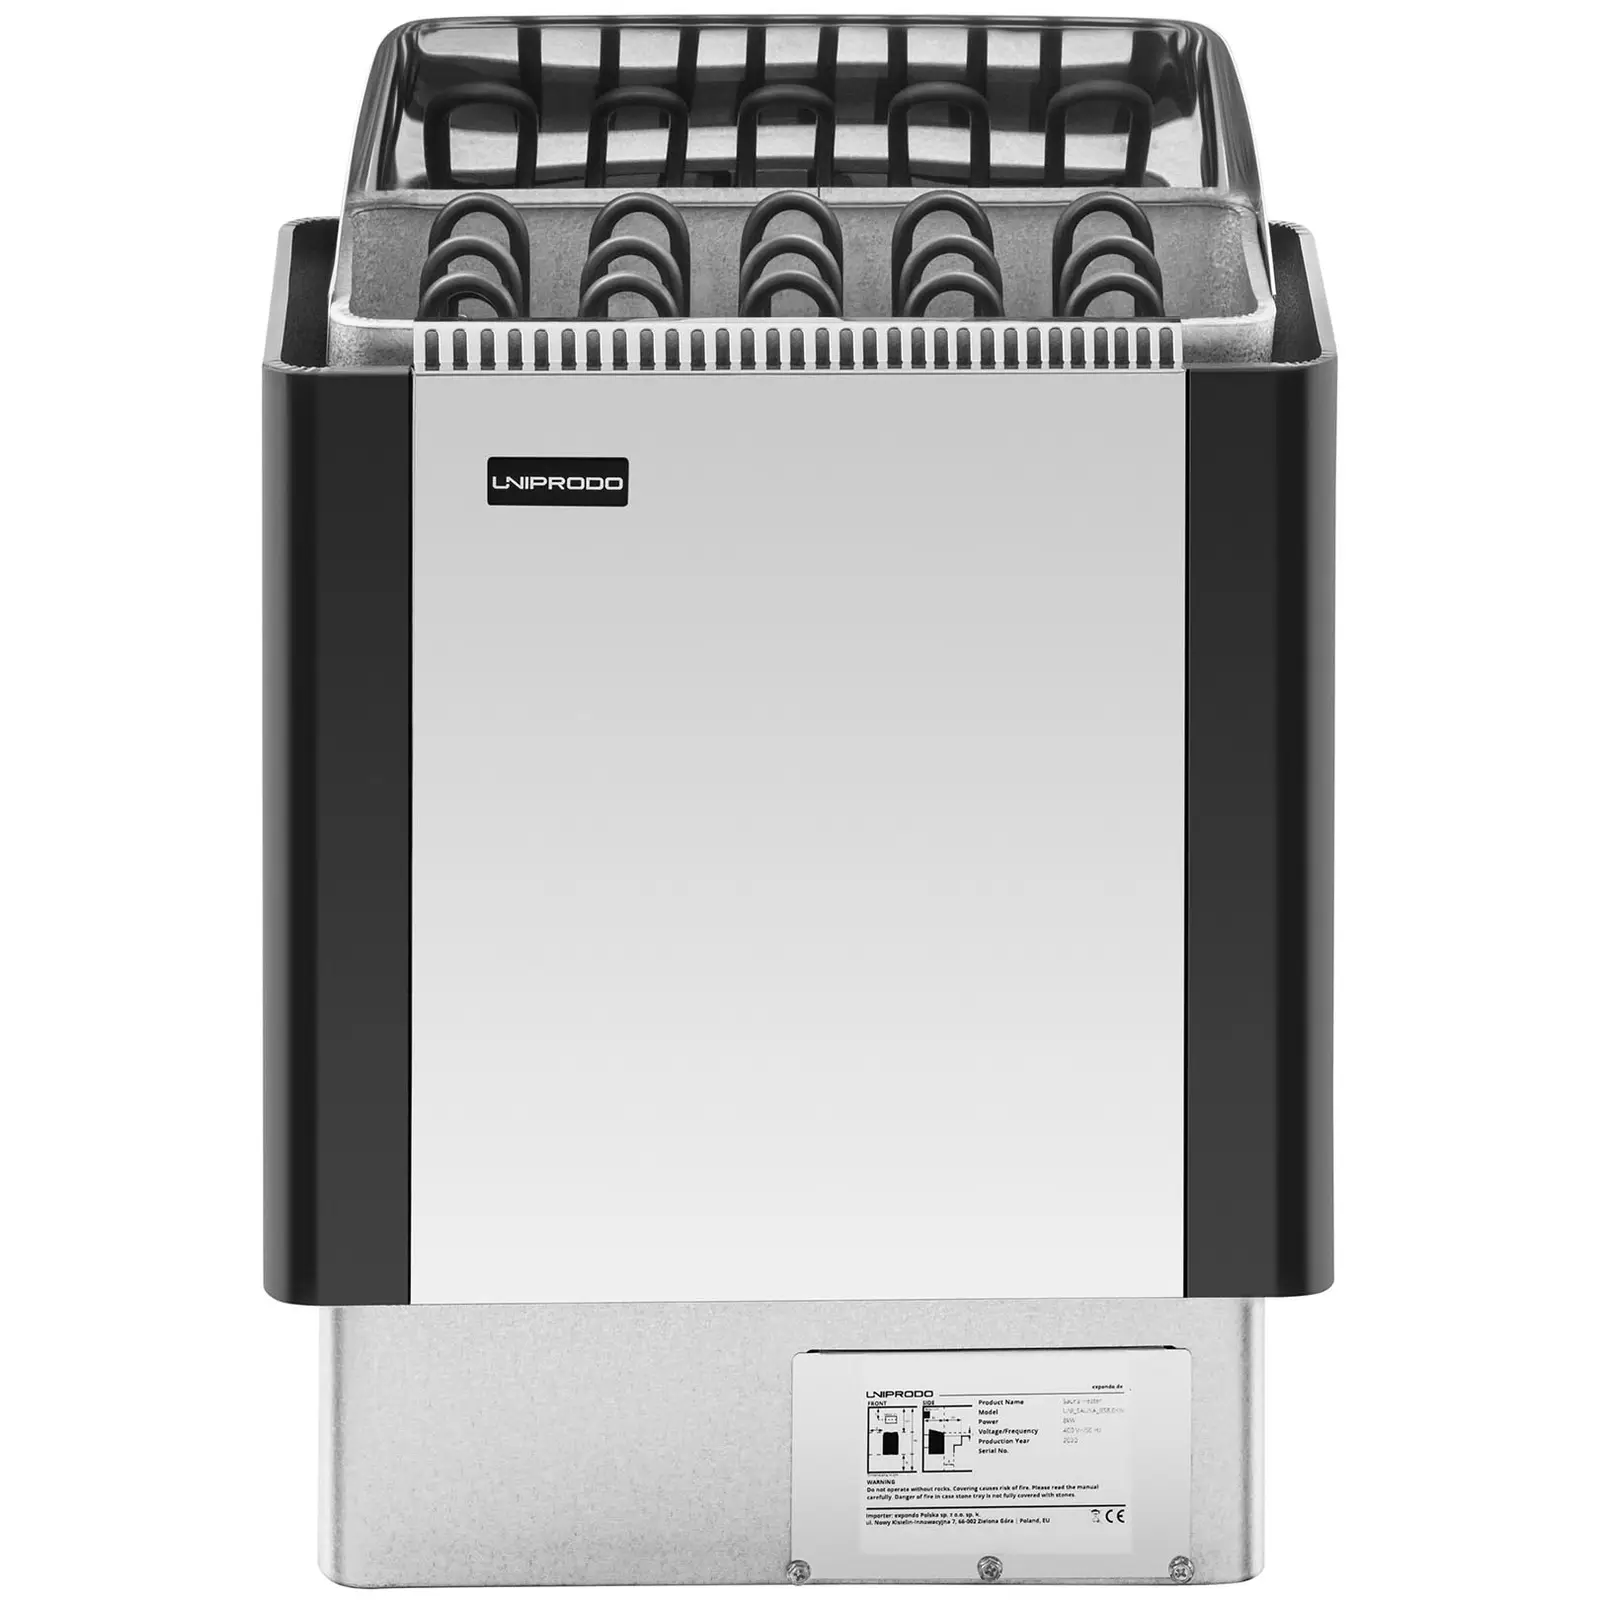 Saunaofen - 8 kW - 30 bis 110 °C - Edelstahlblende